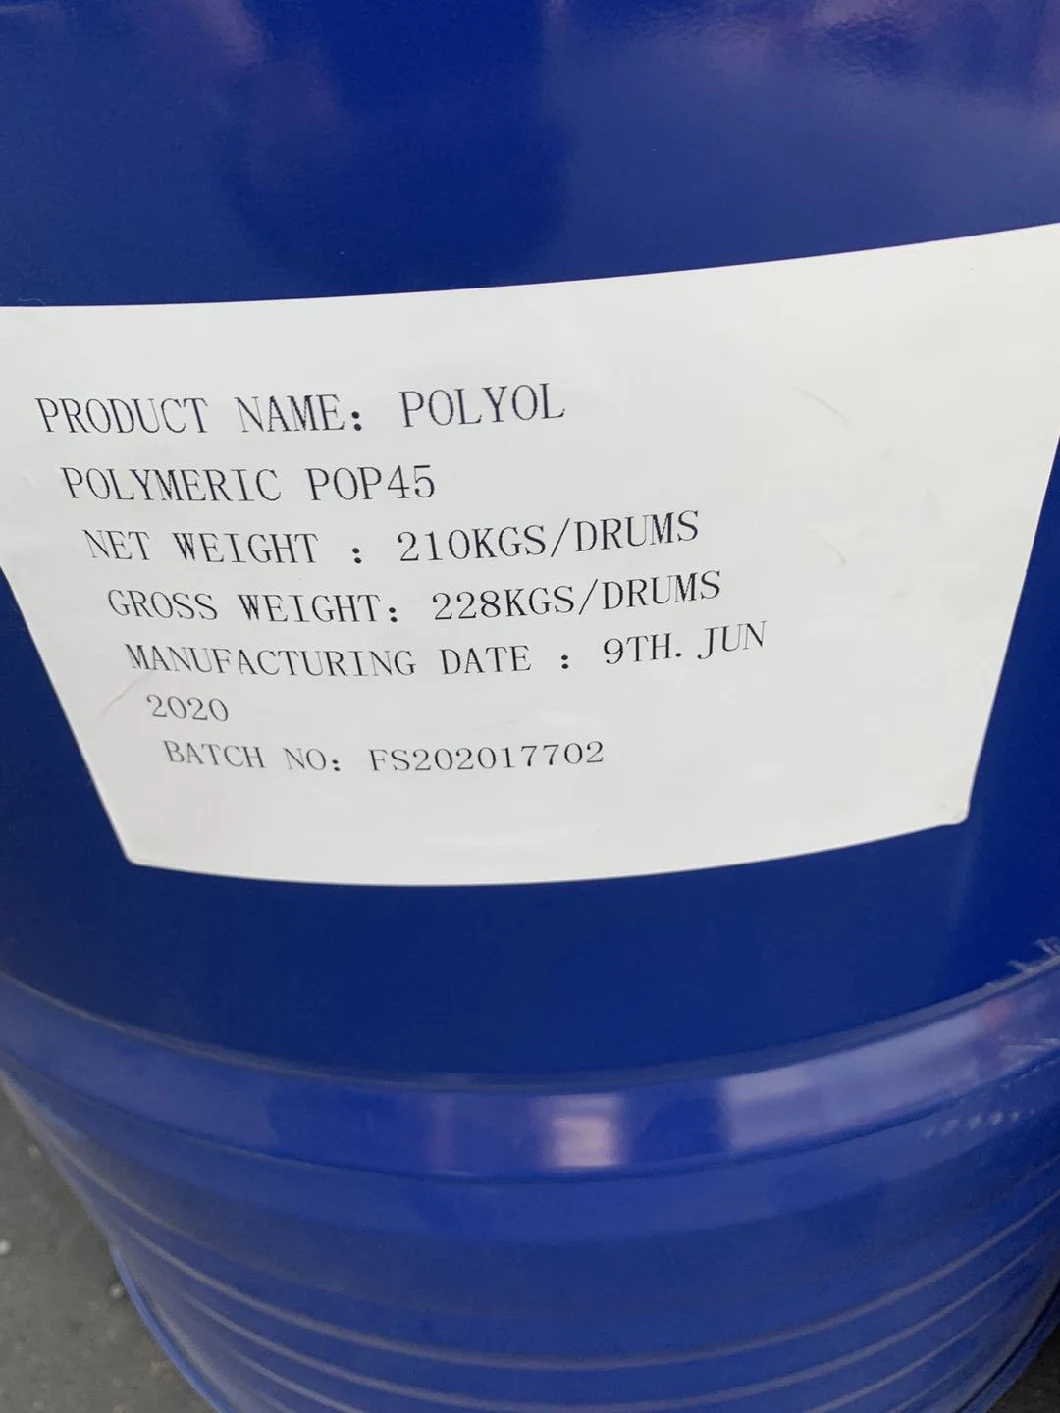 Polyurethane Polyol and Isocyanate Prepolymer